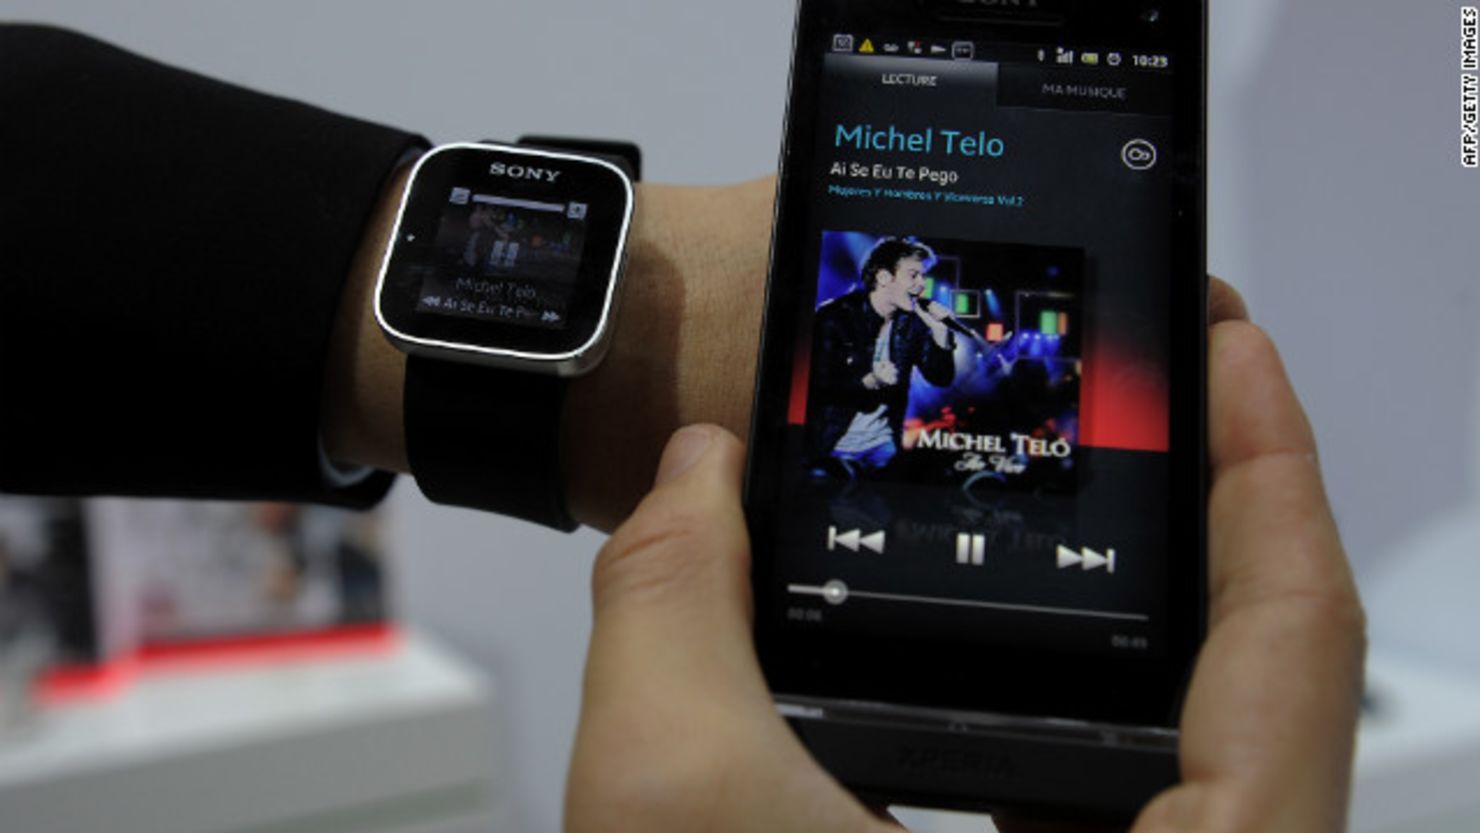 Sony presentó durante el Congreso Mundial de Móvil su "smartwatch" que se puede conectar a un teléfono Sony